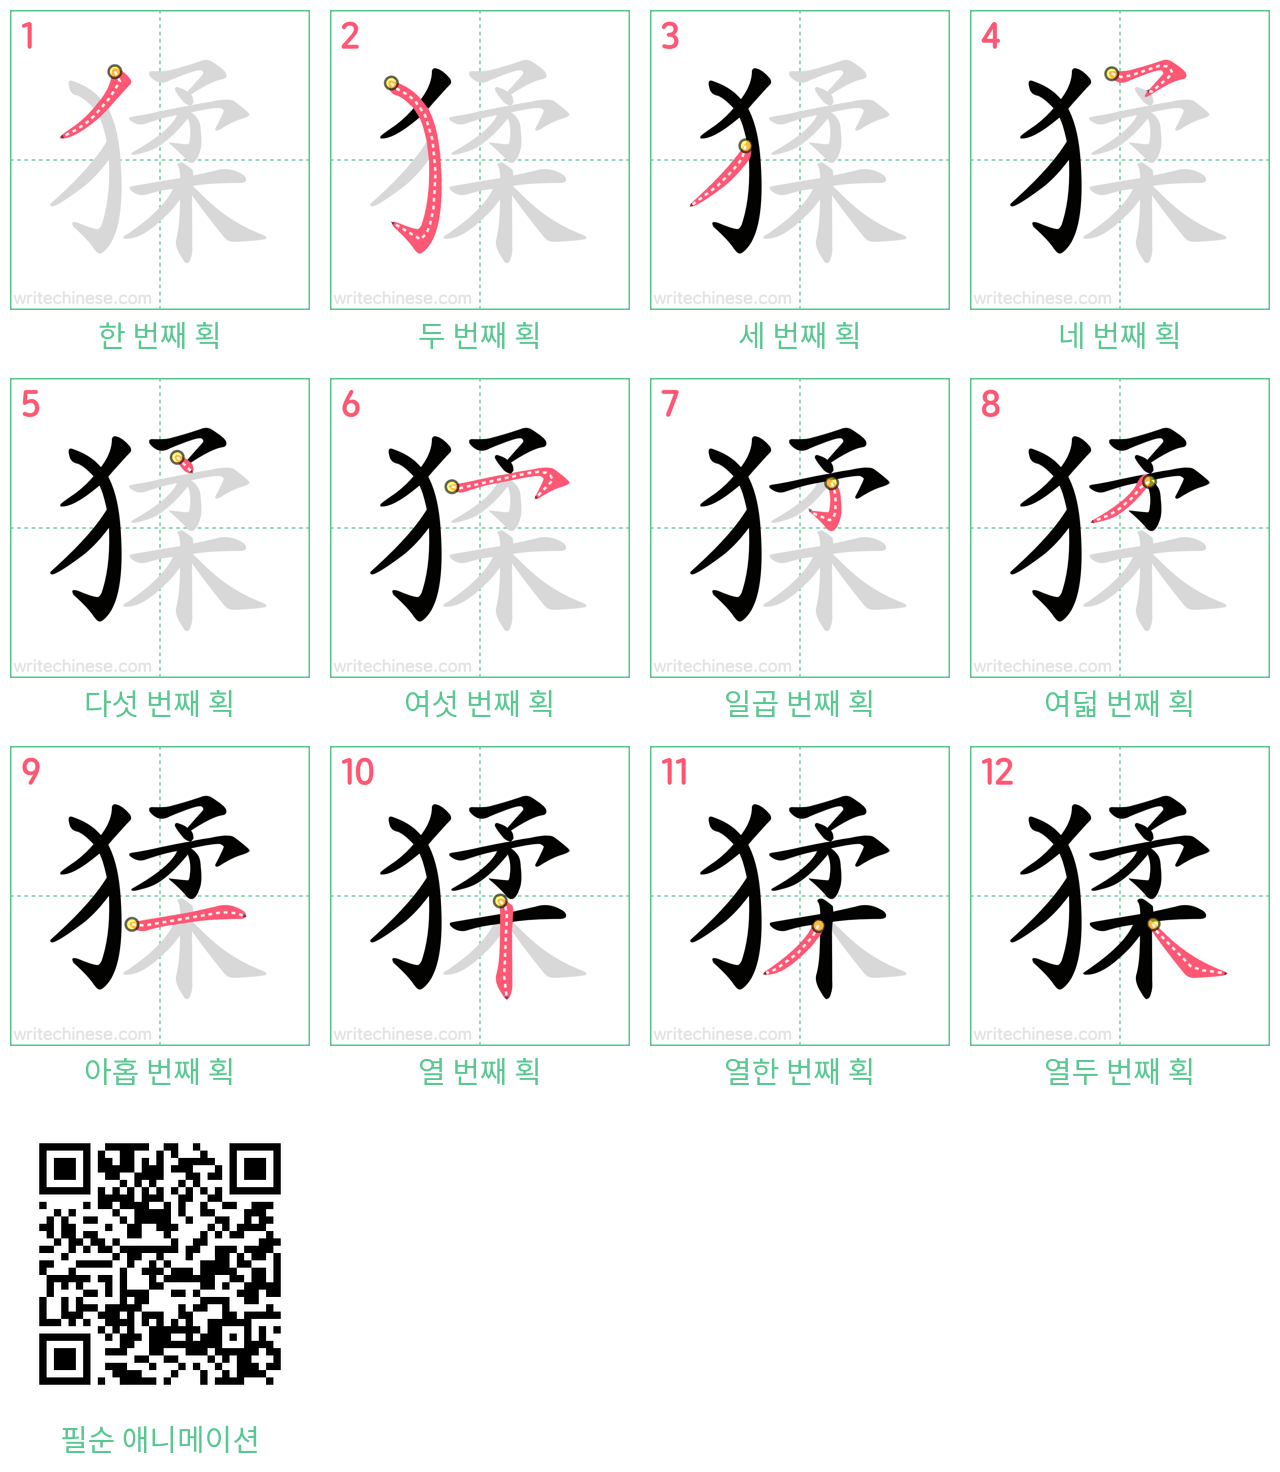 猱 step-by-step stroke order diagrams